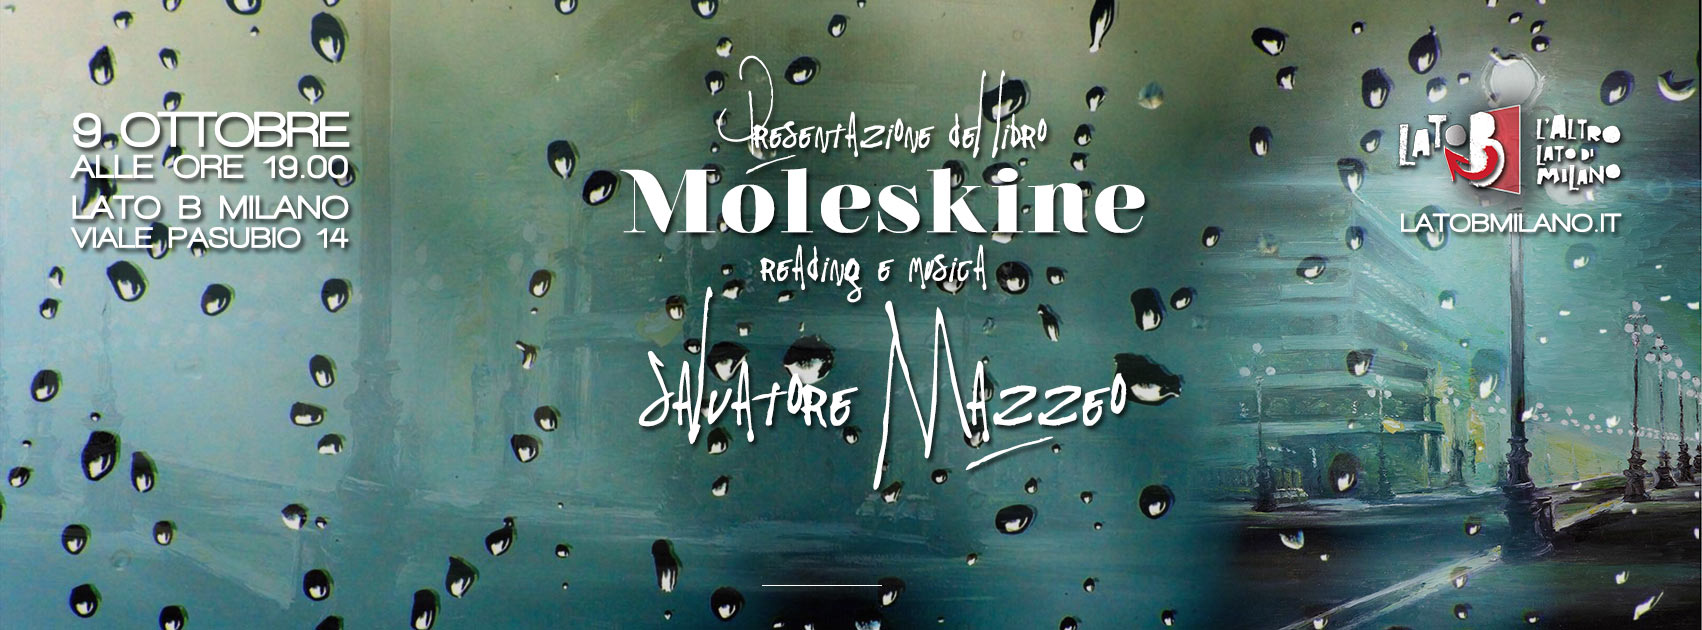 copertina-moleskine1